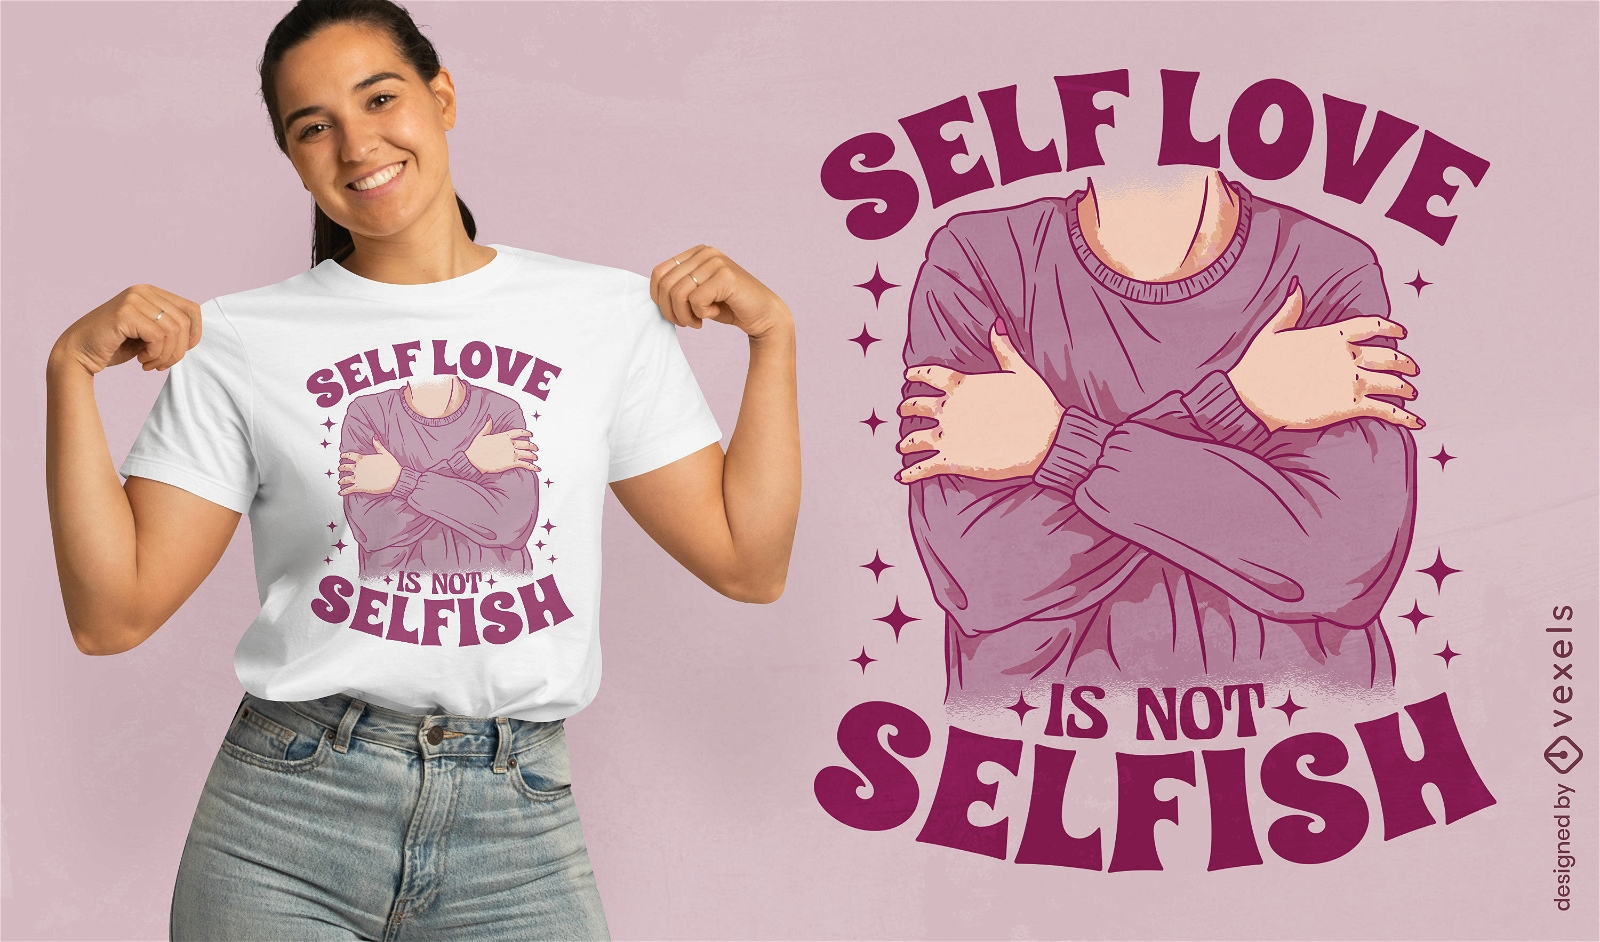 El amor propio no es un dise?o de camiseta ego?sta